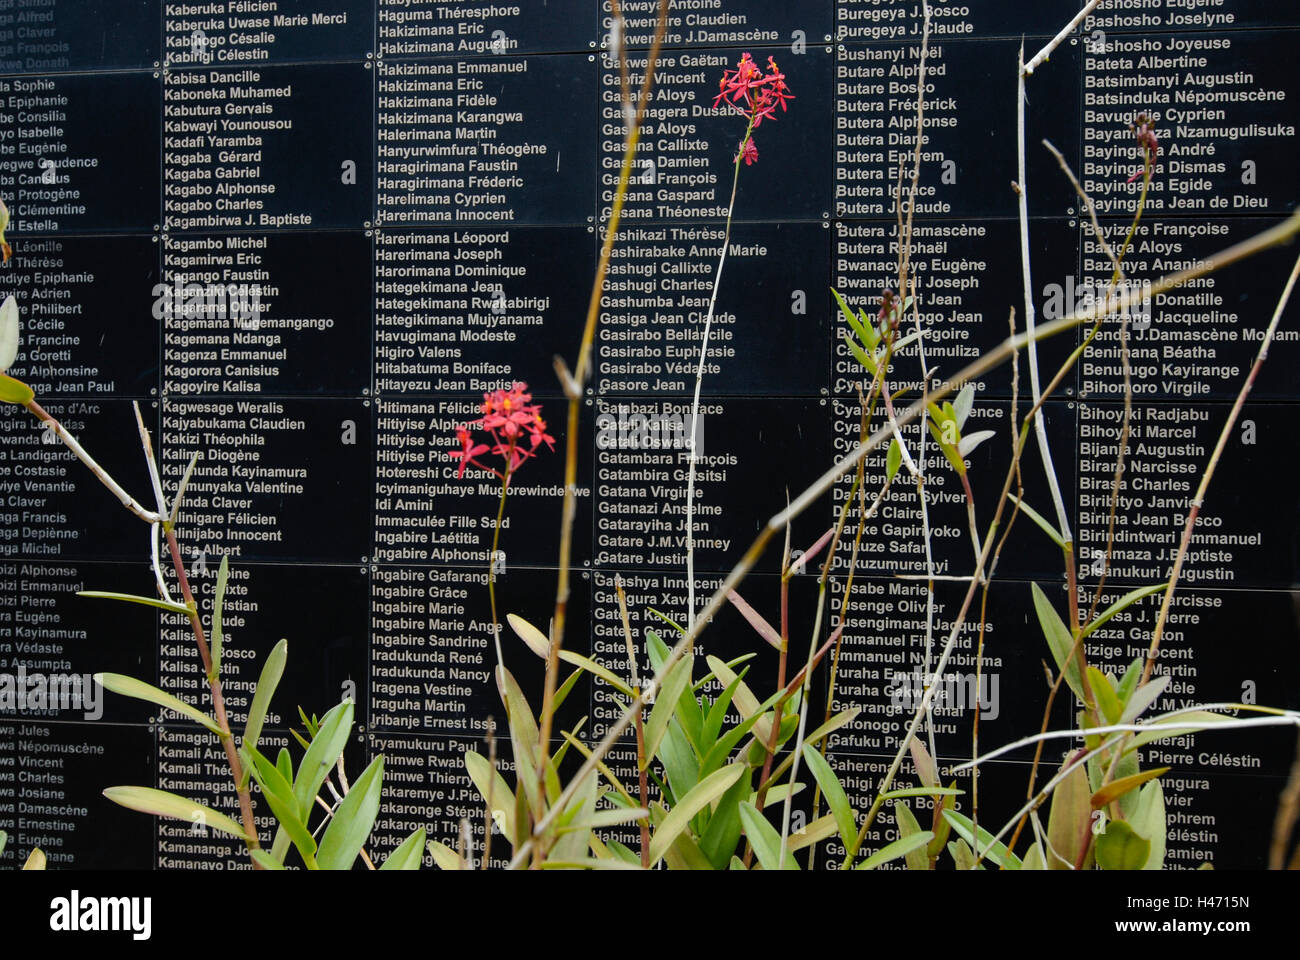 Ruanda Kigali Genocide Memorial situato in Gisozil durante il genocidio in aprile 1994 quasi un milione di Tutsi furono uccisi dagli hutu di omicidio, nero lastre in pietra bianca con i nomi delle vittime Foto Stock